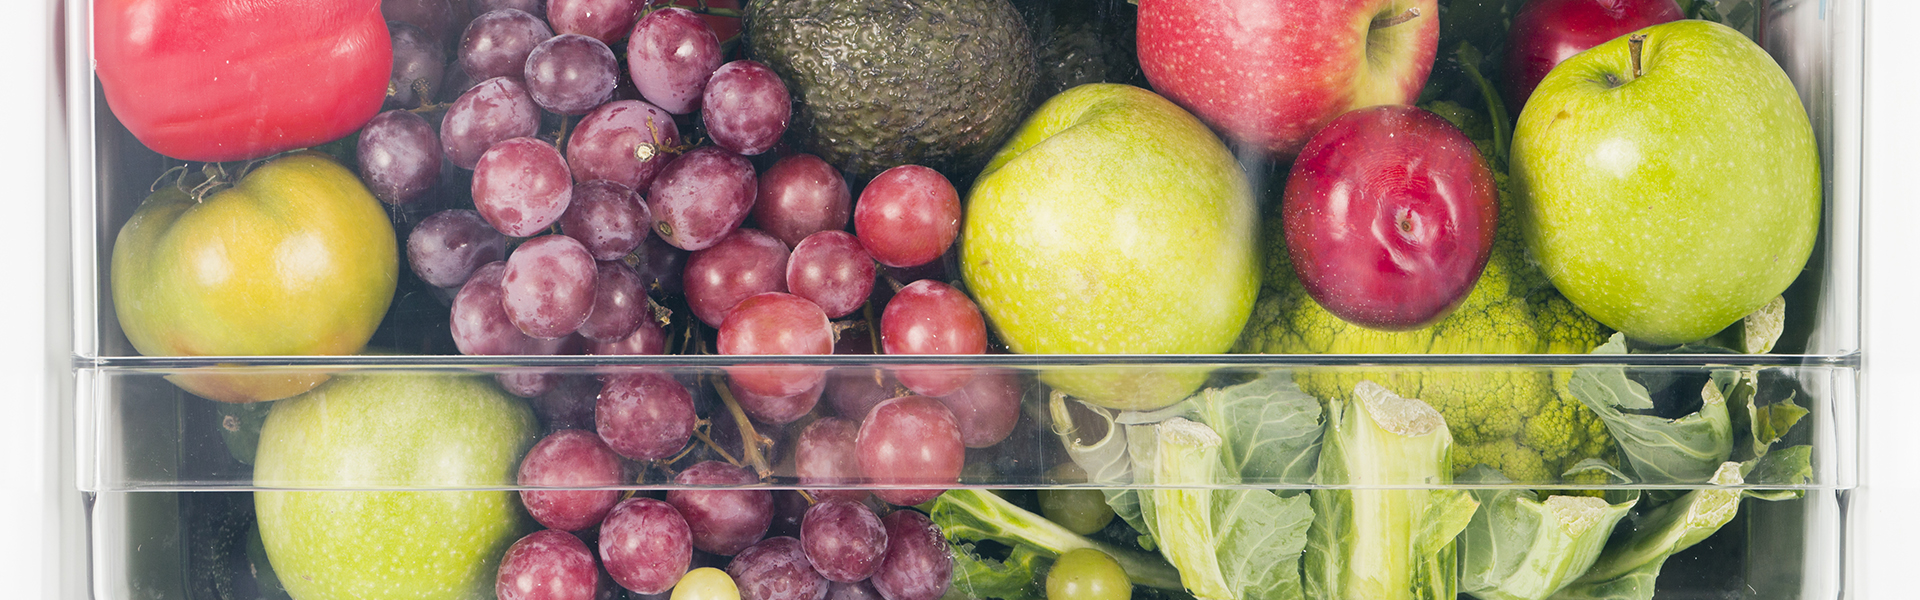 6 storage essentials every kitchen needs to minimise food waste